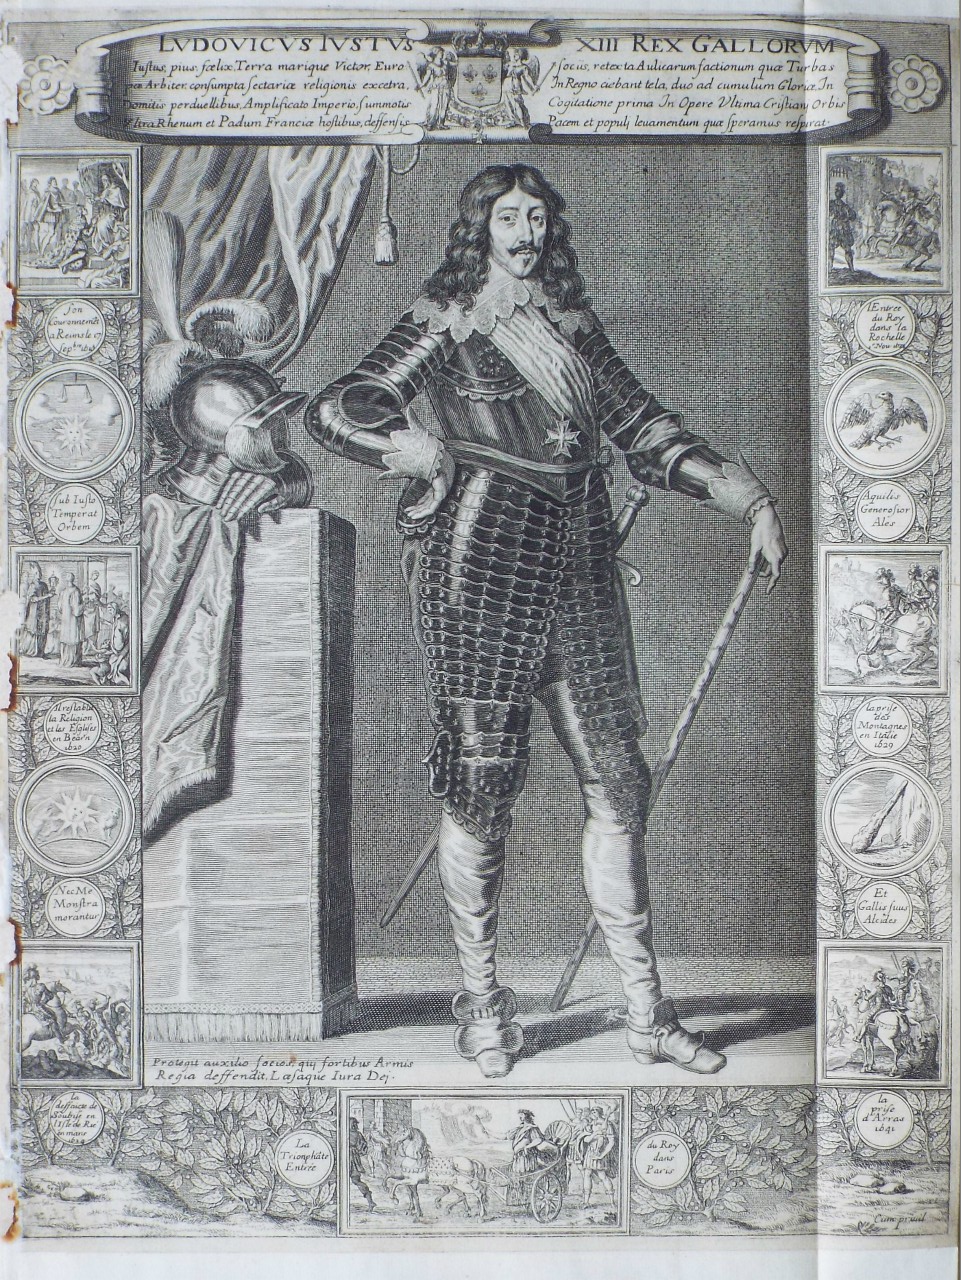 Print - Ludovicus XIII Rex Gallorum